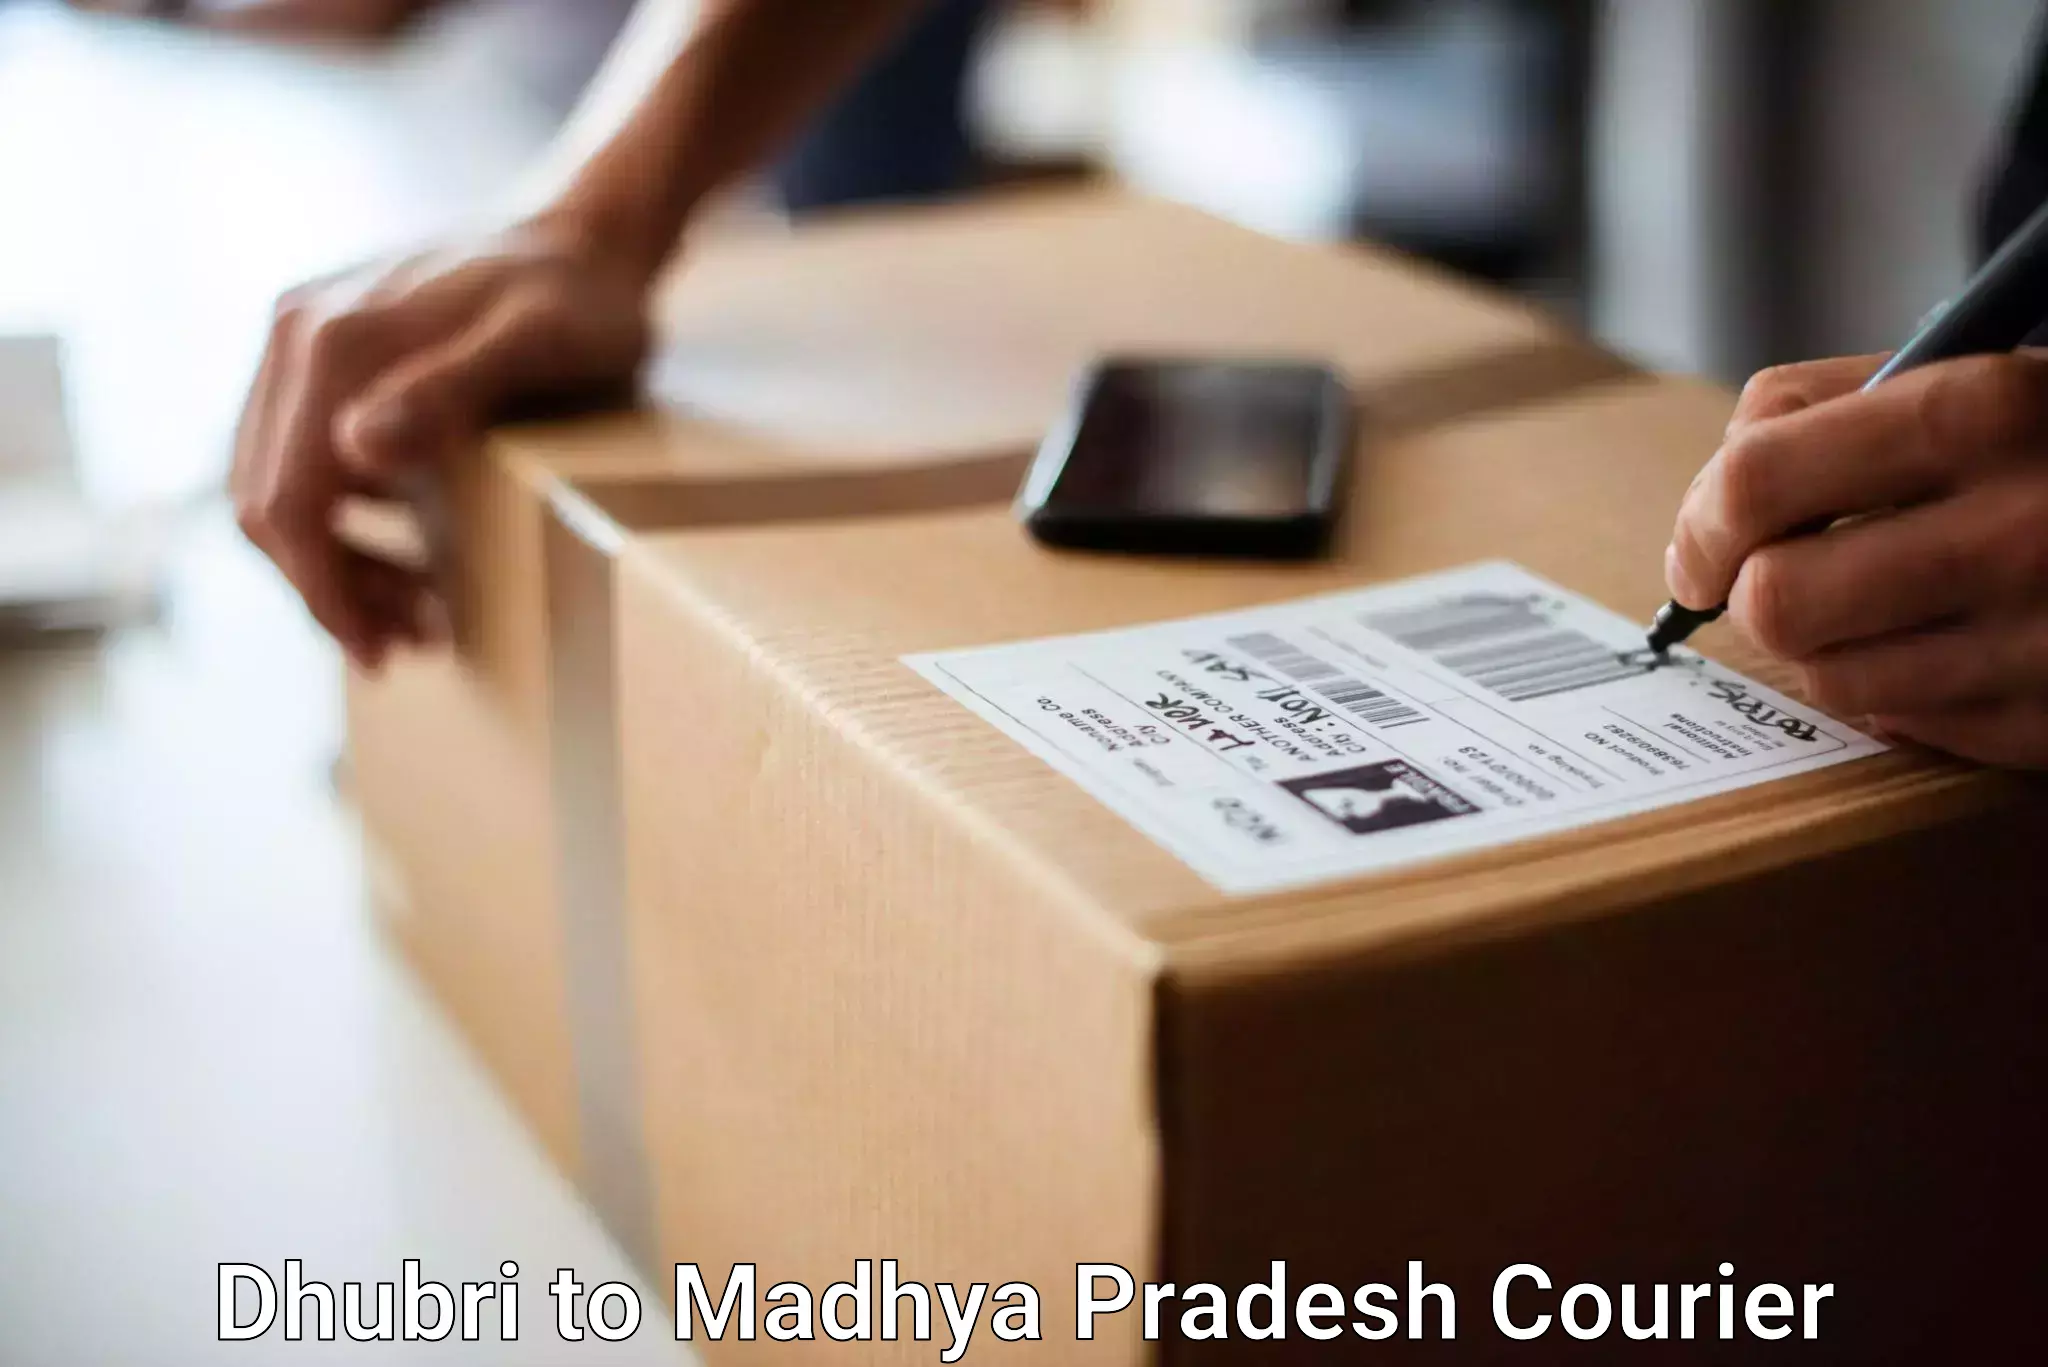 Luggage delivery estimate Dhubri to Itarsi